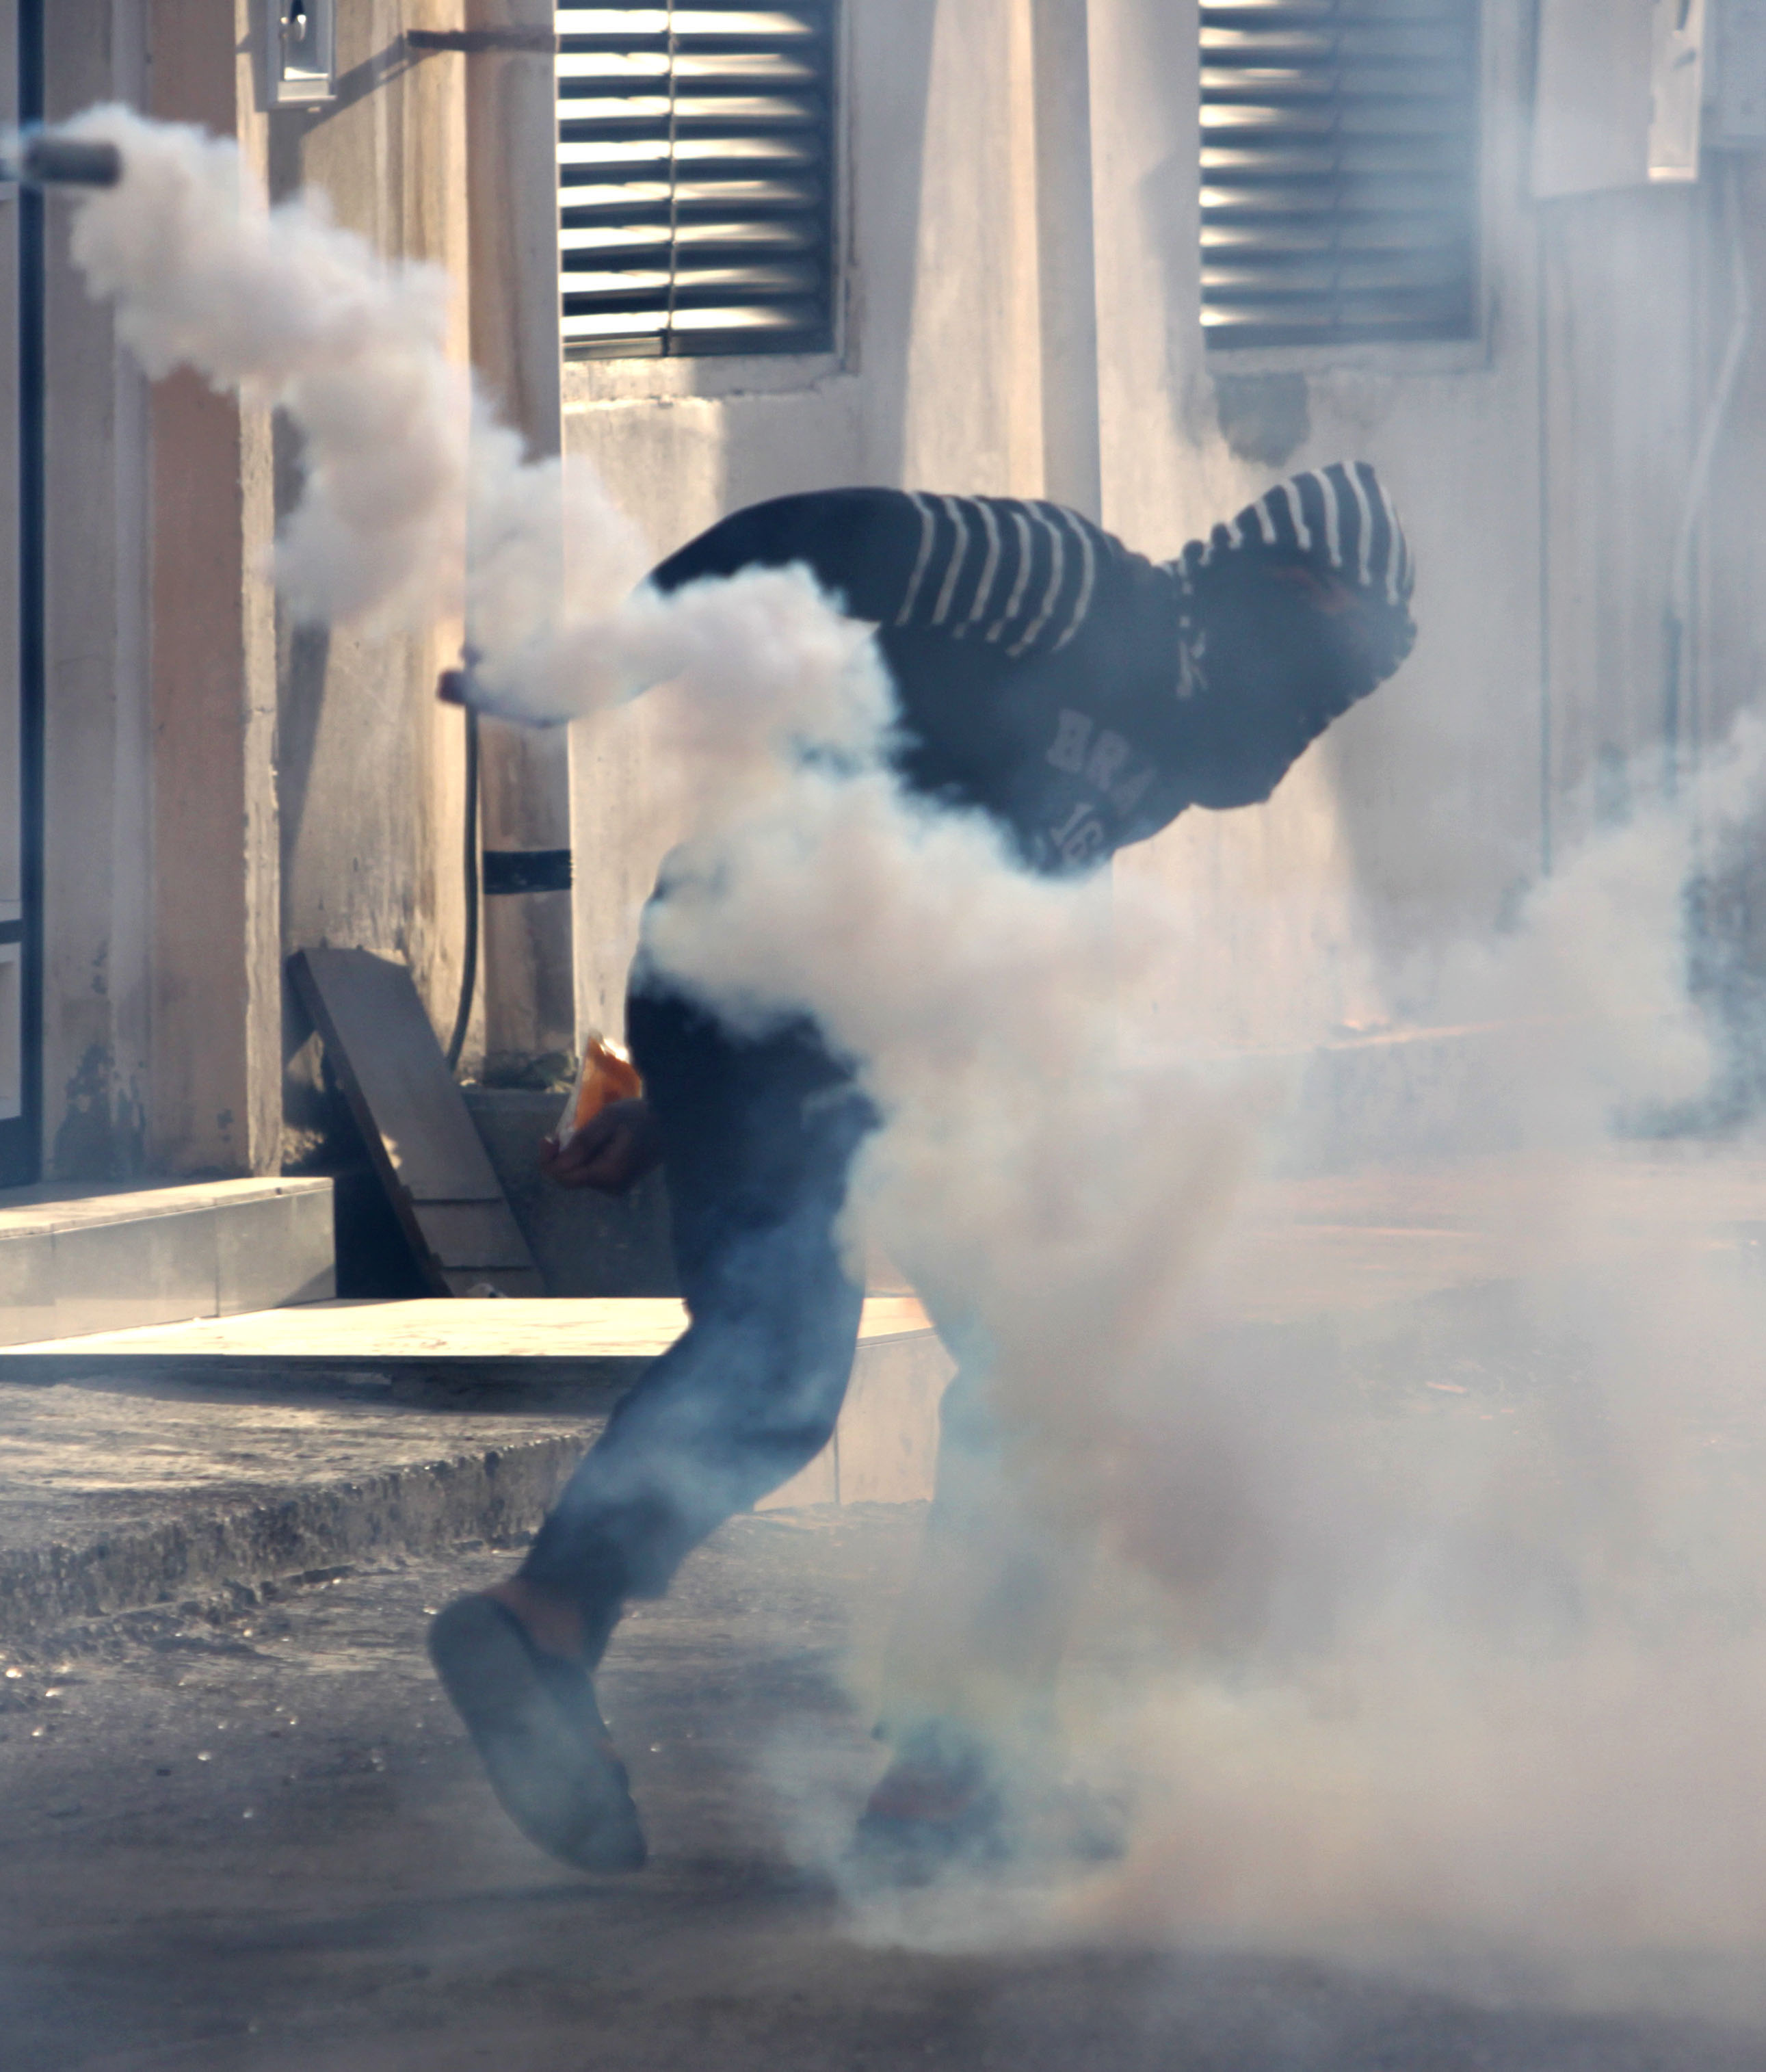 En man blir attackerad av kravallpolisens tårgas. Bahrain har fått internationell kritik för att man använt tårgas "på fel sätt".